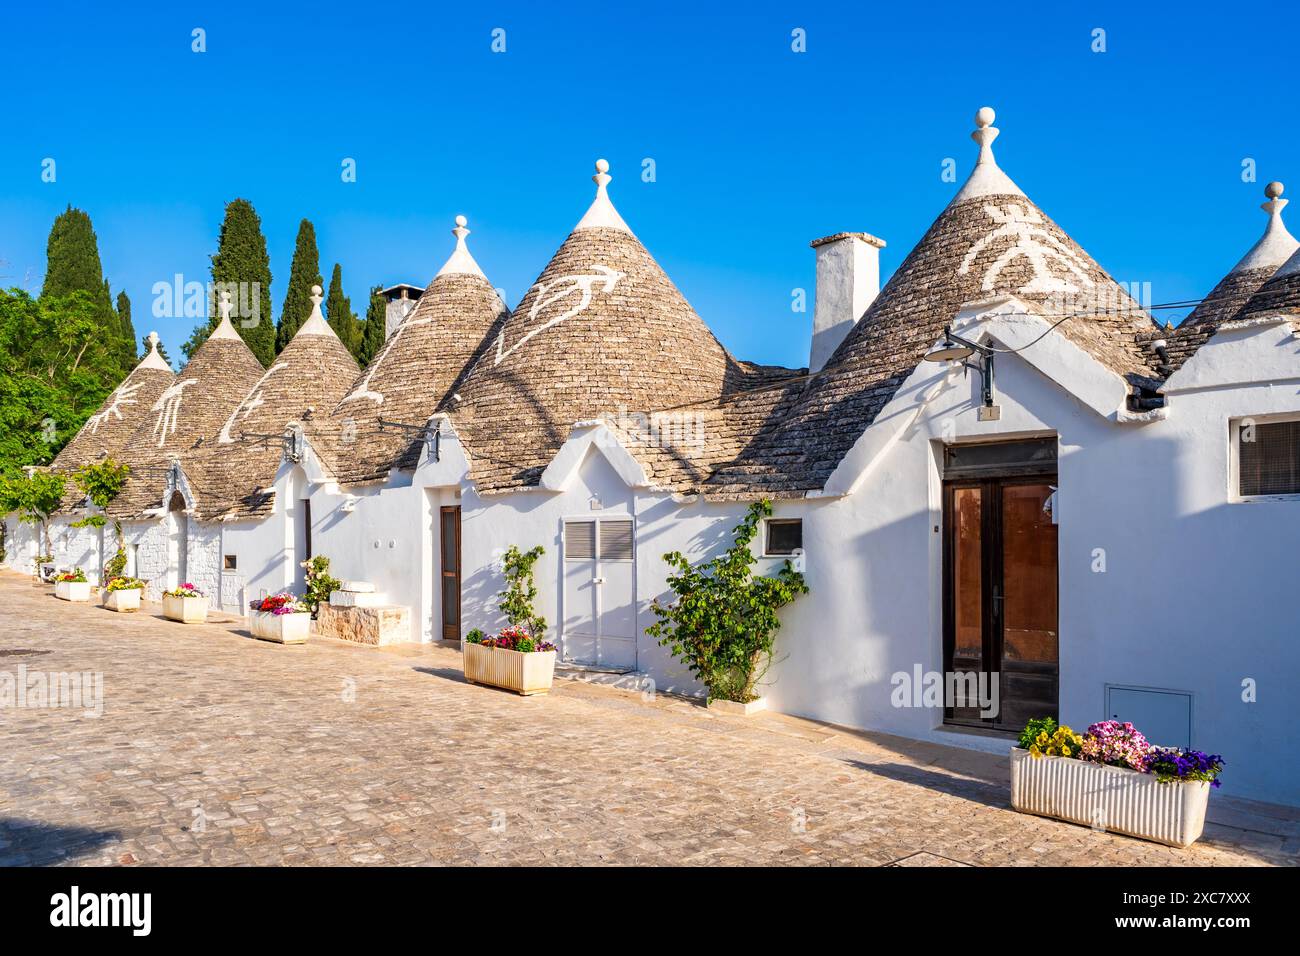 Célèbres vieilles maisons historiques de trulli en pierre sèche avec des toits coniques à Alberobello, Italie. Banque D'Images